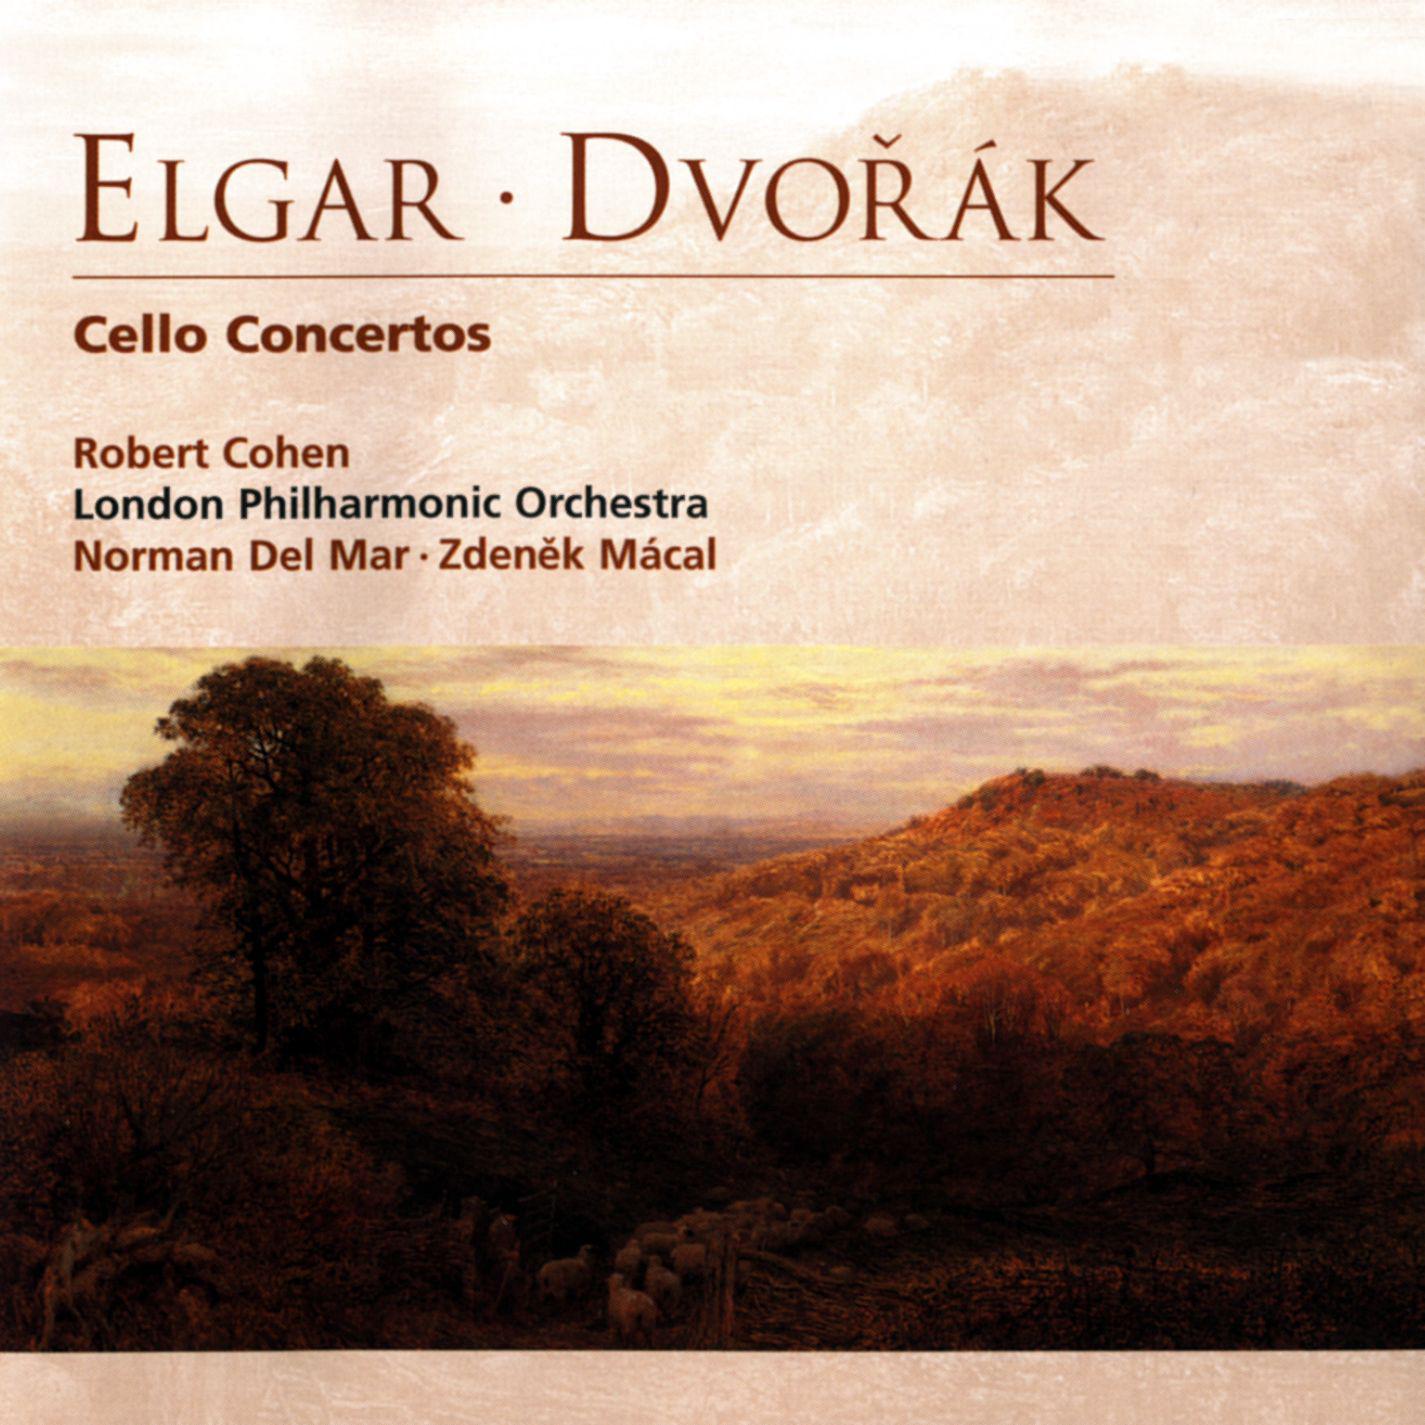 Cello Concerto in E Minor, Op. 85:IV. Allegro - Allegro ma non troppo